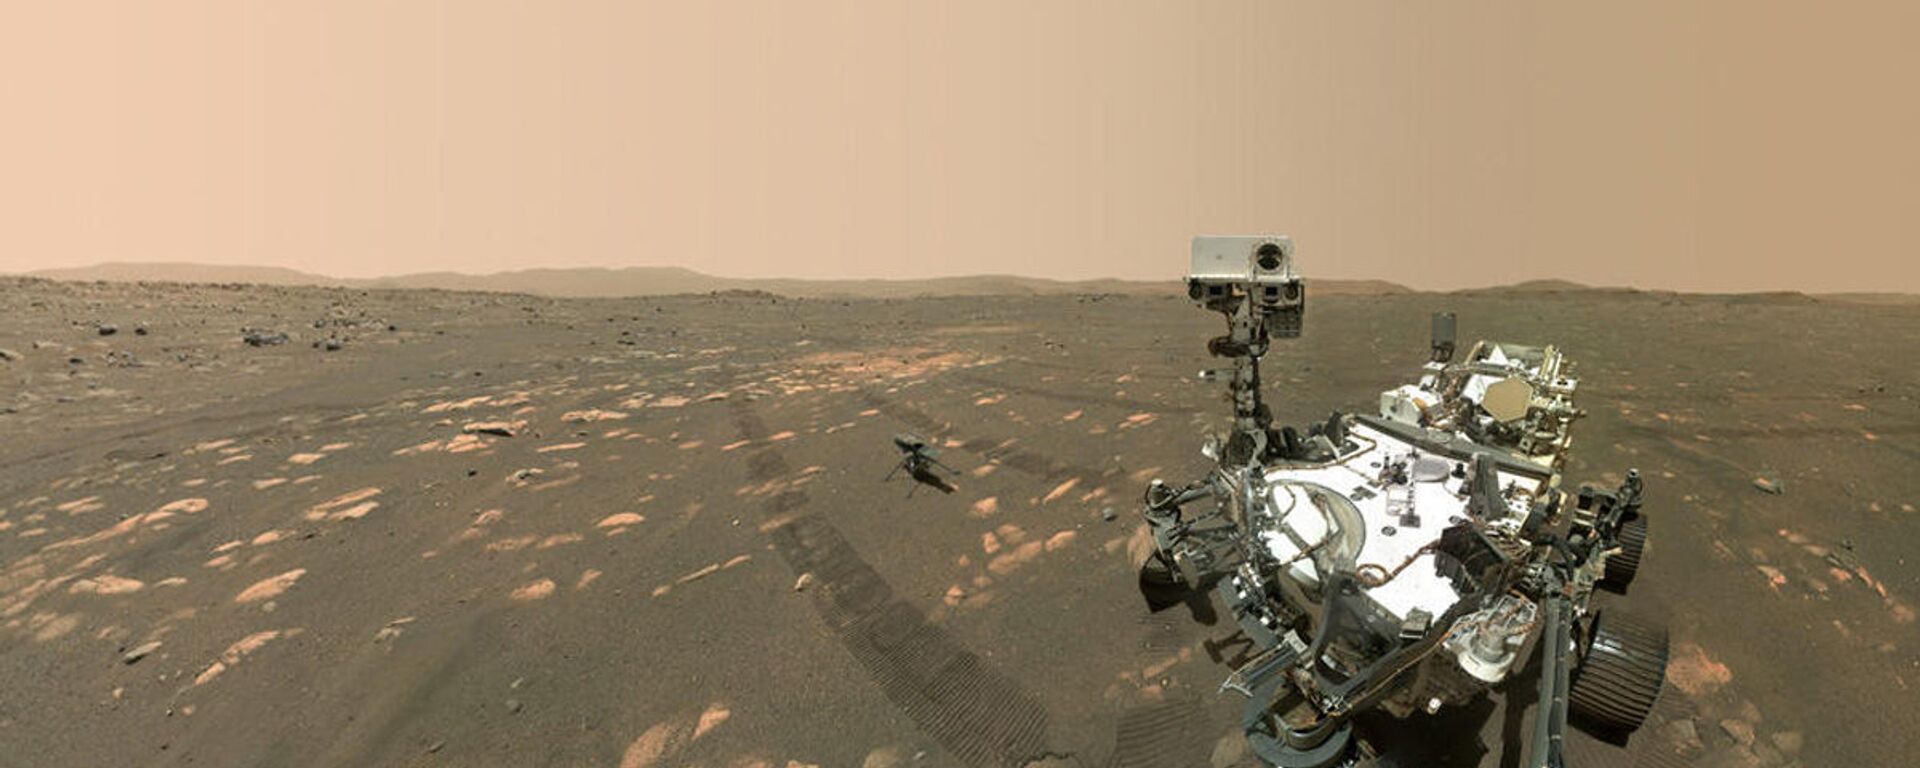 المركبة المتجولة بيرسيفرانس مارس، التابعة لوكالة الفضاء الدولية ناسا، تلتقط صورة سيلفي مع أول طائرة حوامة إنجينيويتي على سطح المريخ، أبريل 2021 - سبوتنيك عربي, 1920, 22.04.2021